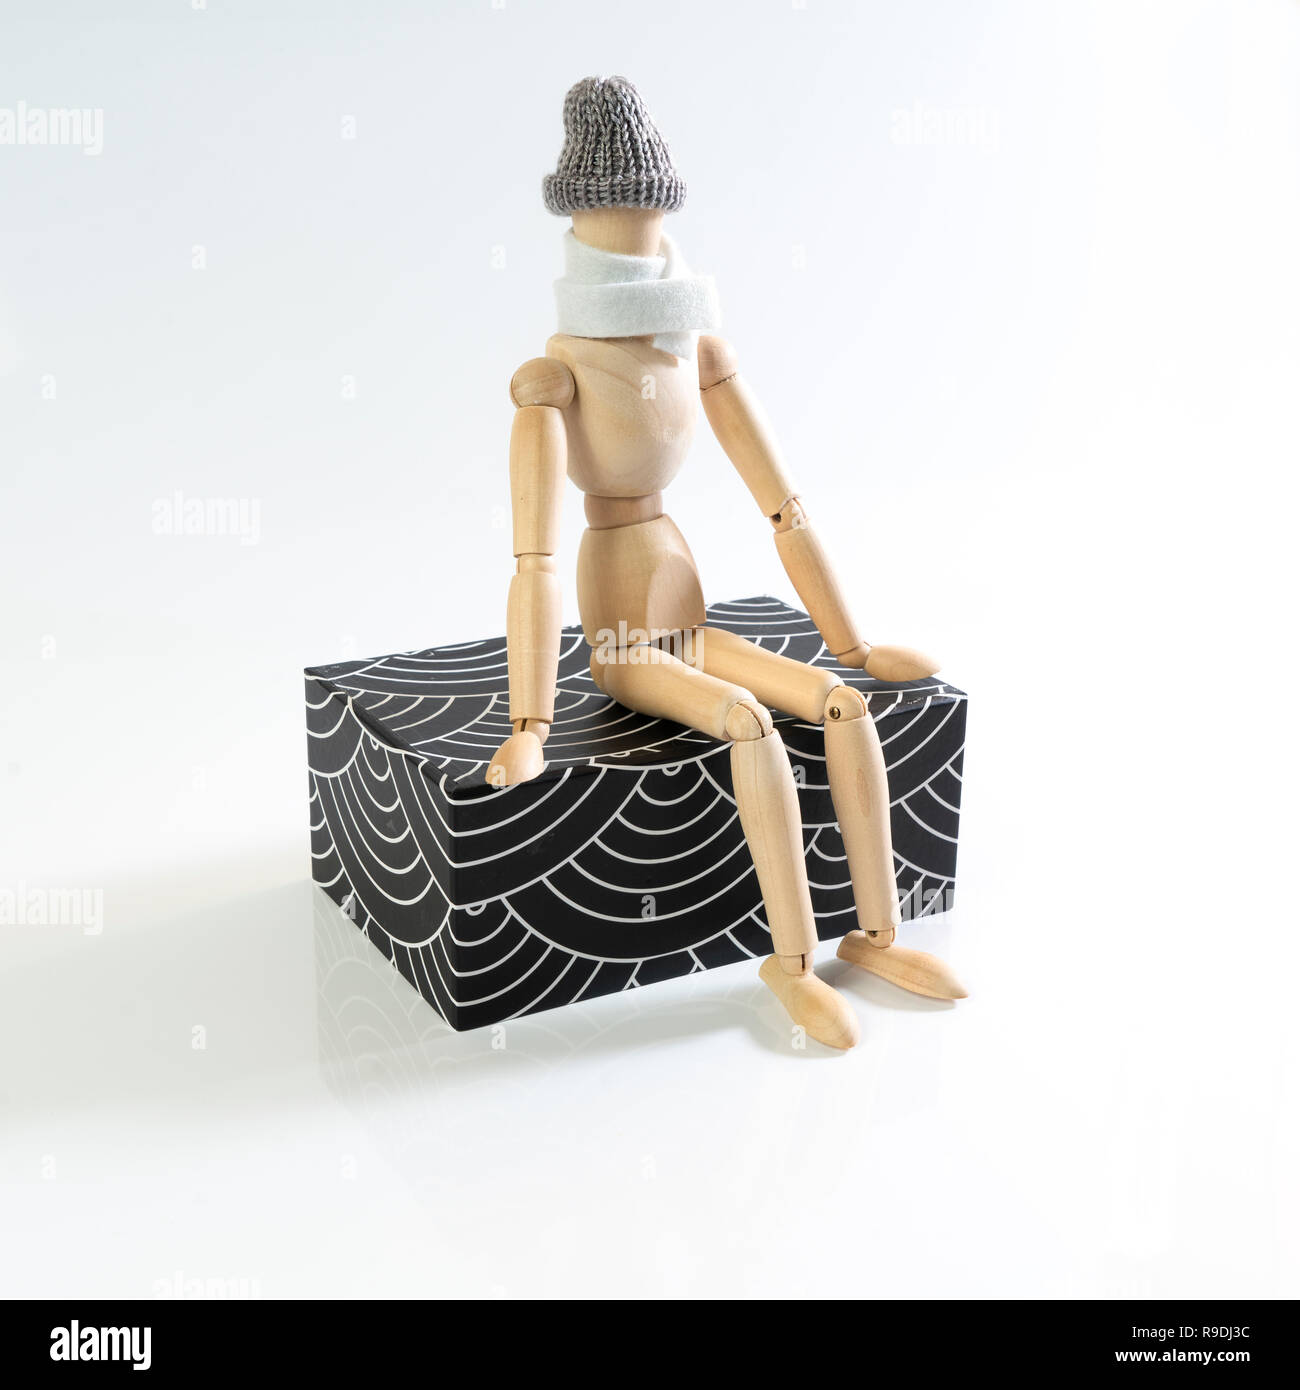 Eine hölzerne Puppe mit Schal und Mütze sitzt auf einem parallelepiped Stockfoto